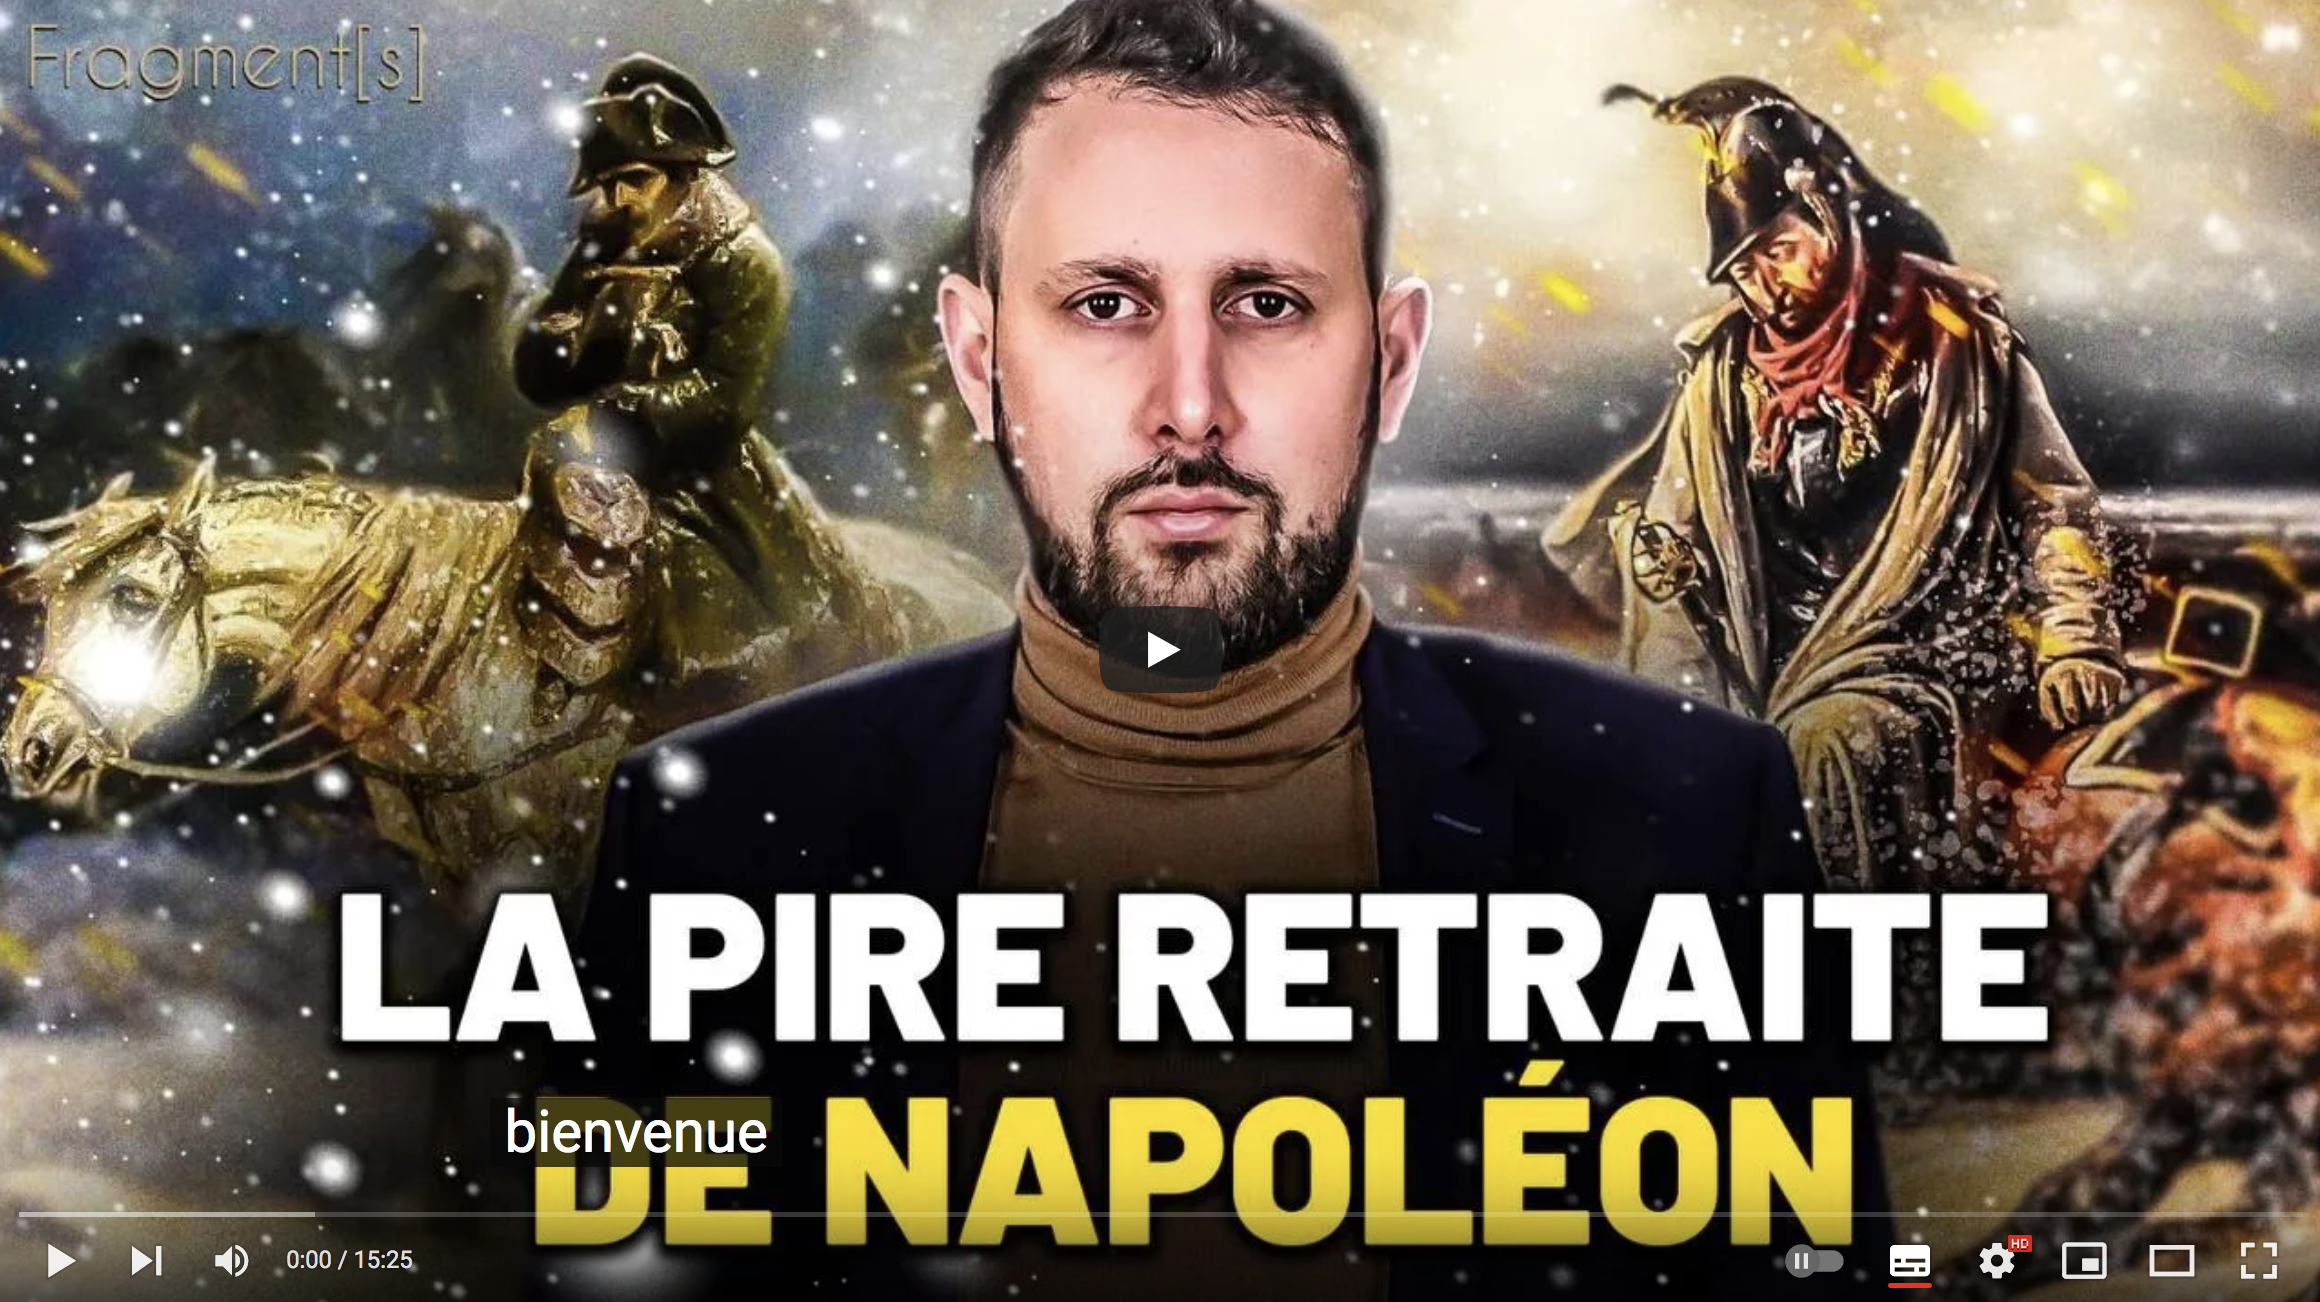 La pire retraite de Napoléon : Ces témoignages vont vous glacer le sang ! (Christopher Lannes)